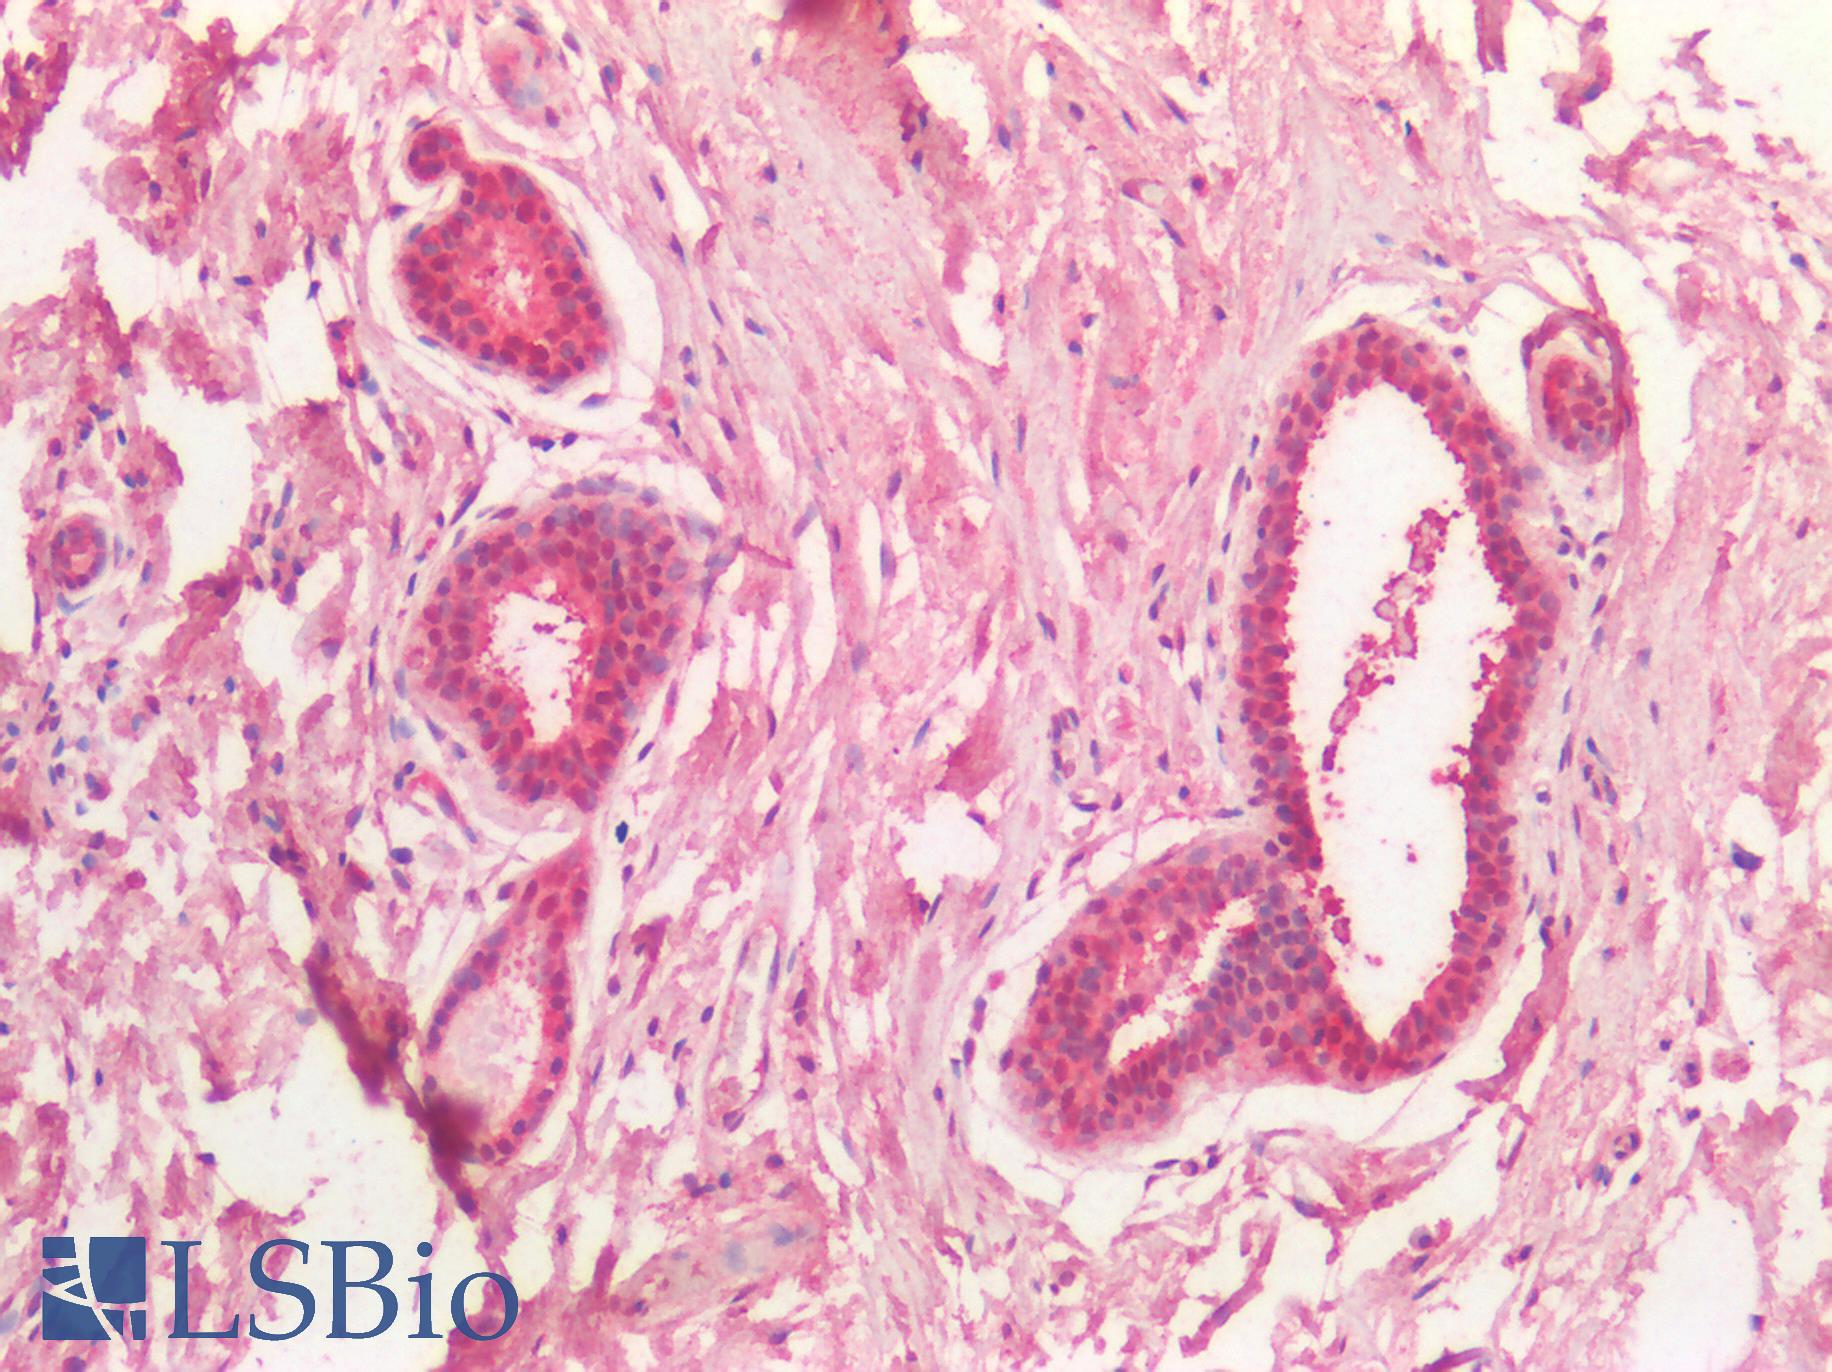 MYC / c-Myc Antibody - Human Breast: Formalin-Fixed, Paraffin-Embedded (FFPE)